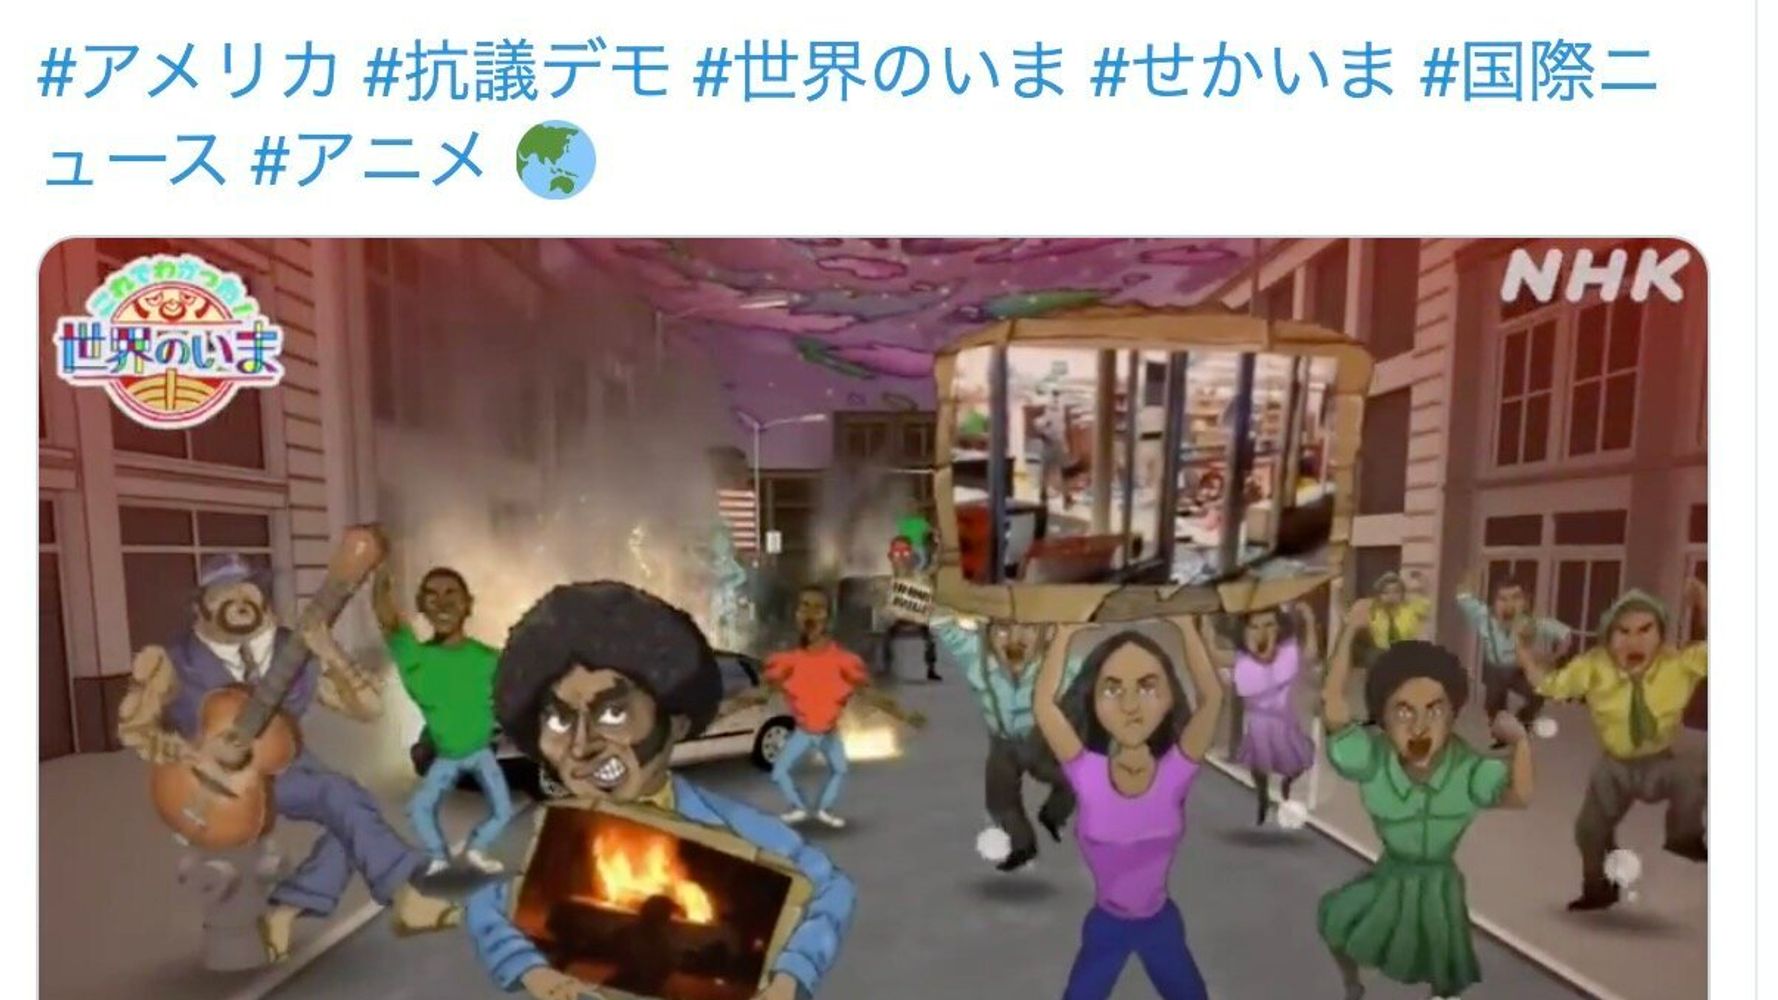 黒人を描いたnhkのアニメ動画はなぜ差別的で 許されない 表現なのか ハフポスト